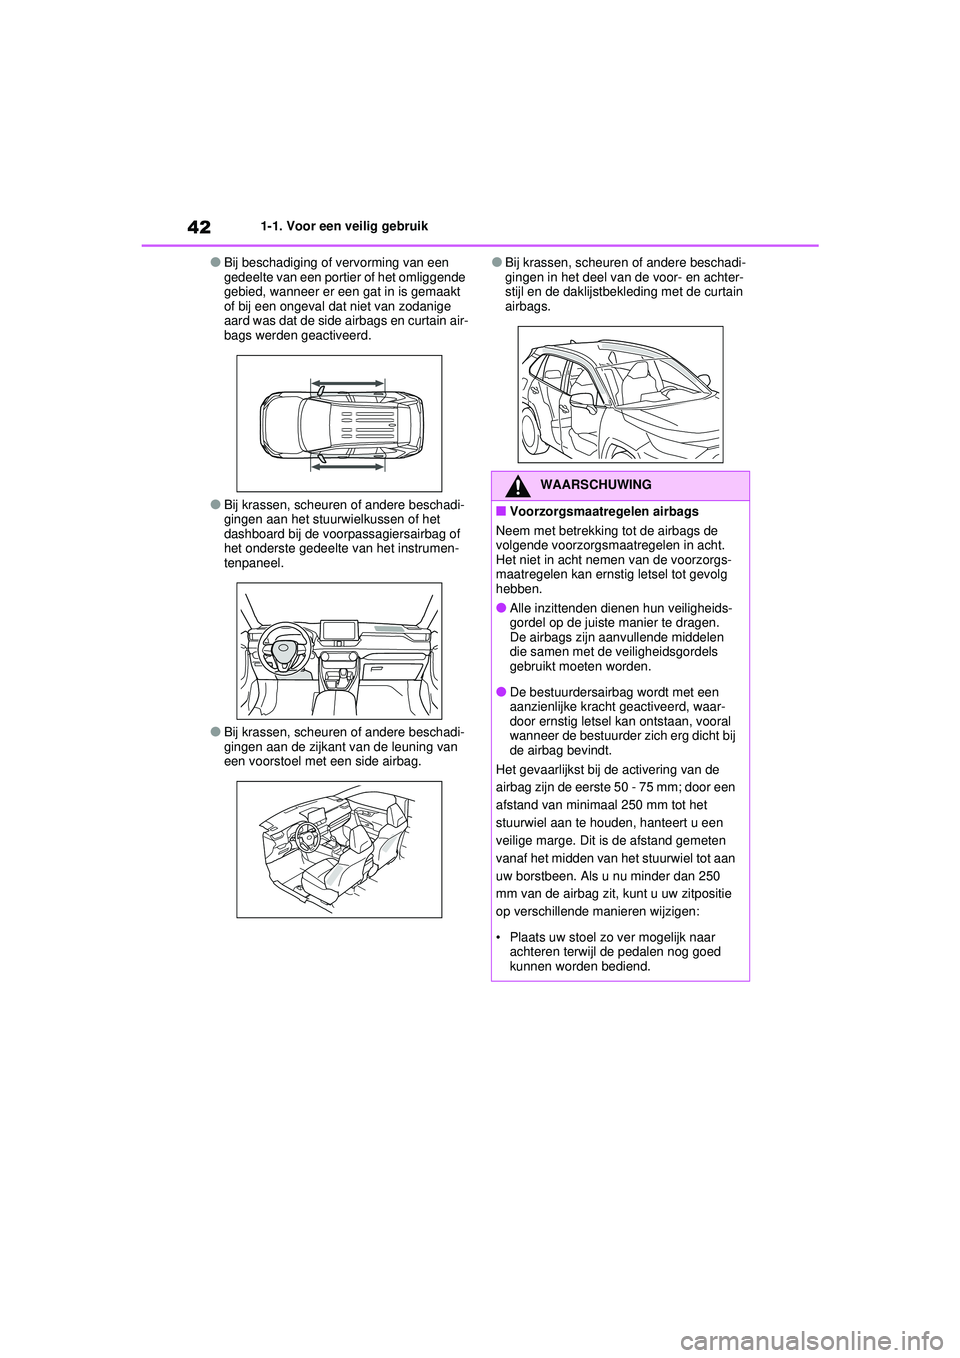 TOYOTA RAV4 HYBRID 2021  Instructieboekje (in Dutch) 421-1. Voor een veilig gebruik
●Bij beschadiging of vervorming van een 
gedeelte van een portier of het omliggende 
gebied, wanneer er een gat in is gemaakt 
of bij een ongeval dat niet van zodanige